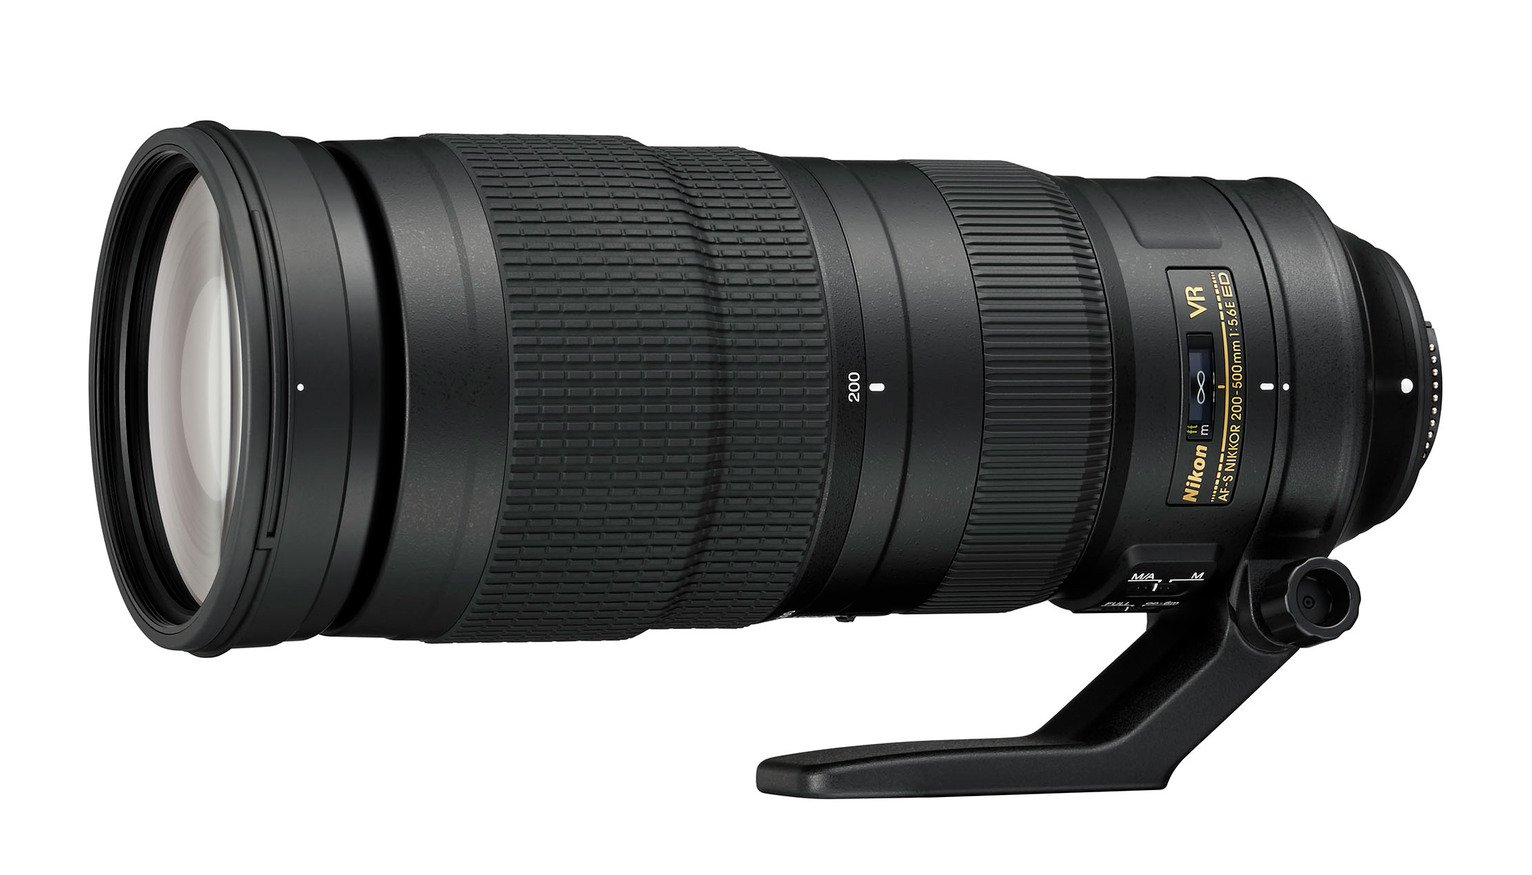 Nikon AF-S Nikkor 200-500mm f/5.6E ED VR Telephoto Lens